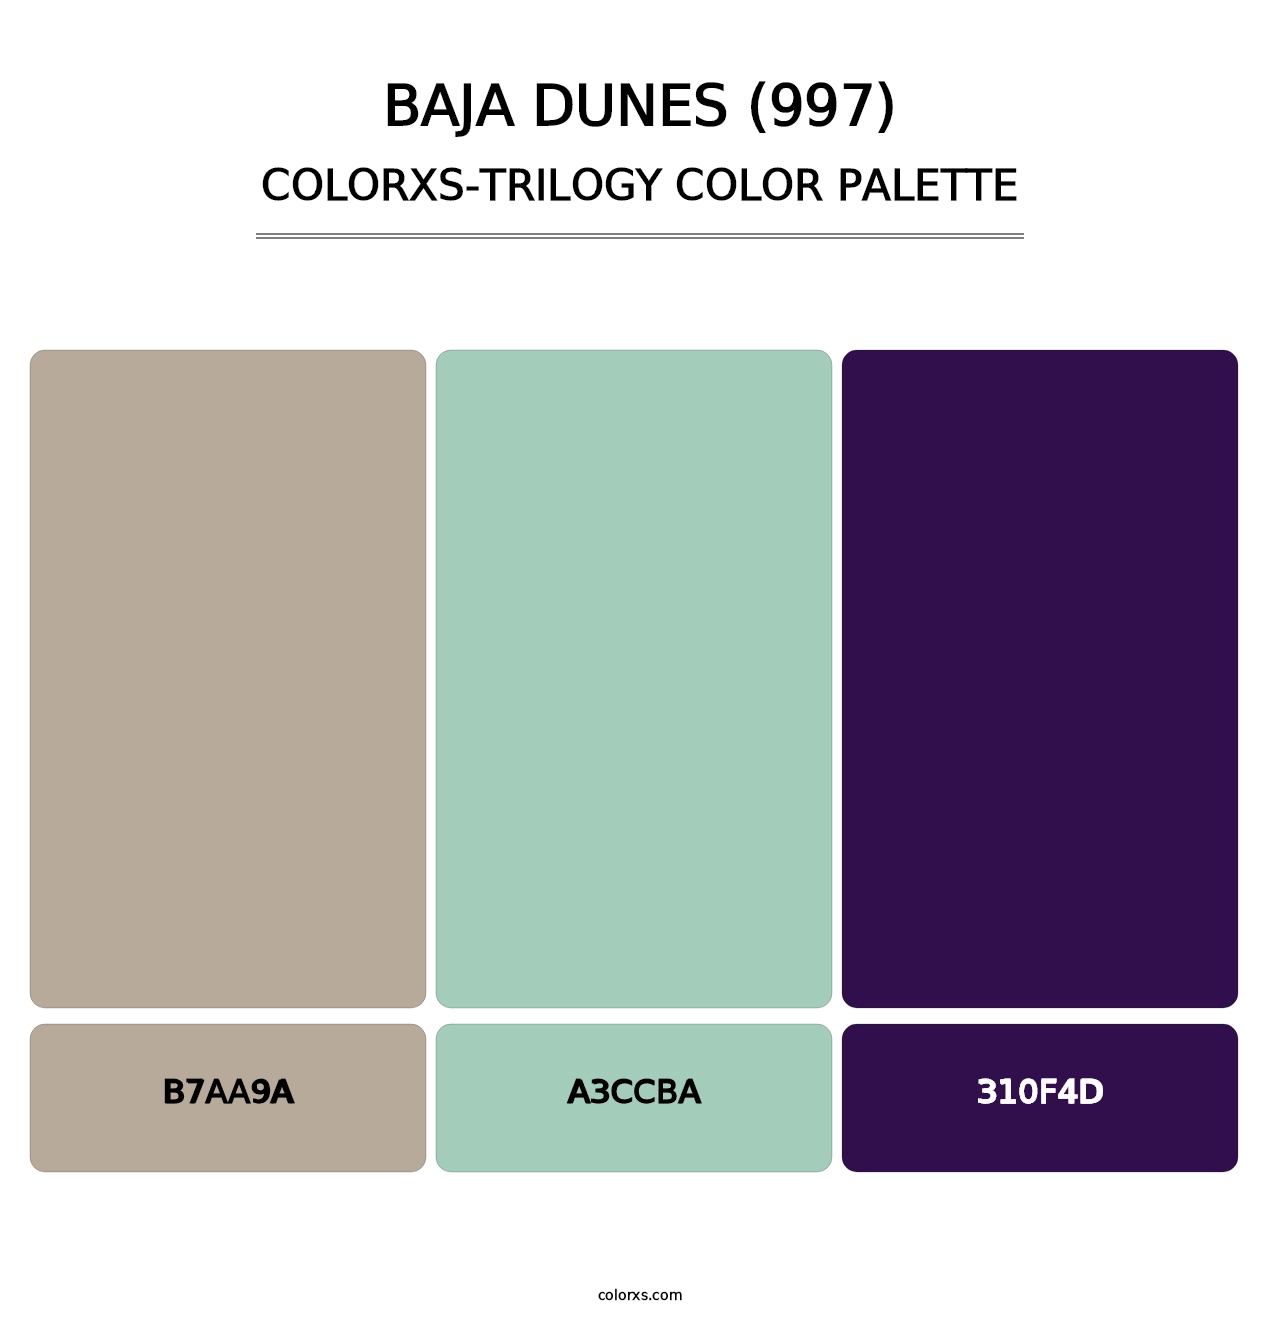 Baja Dunes (997) - Colorxs Trilogy Palette